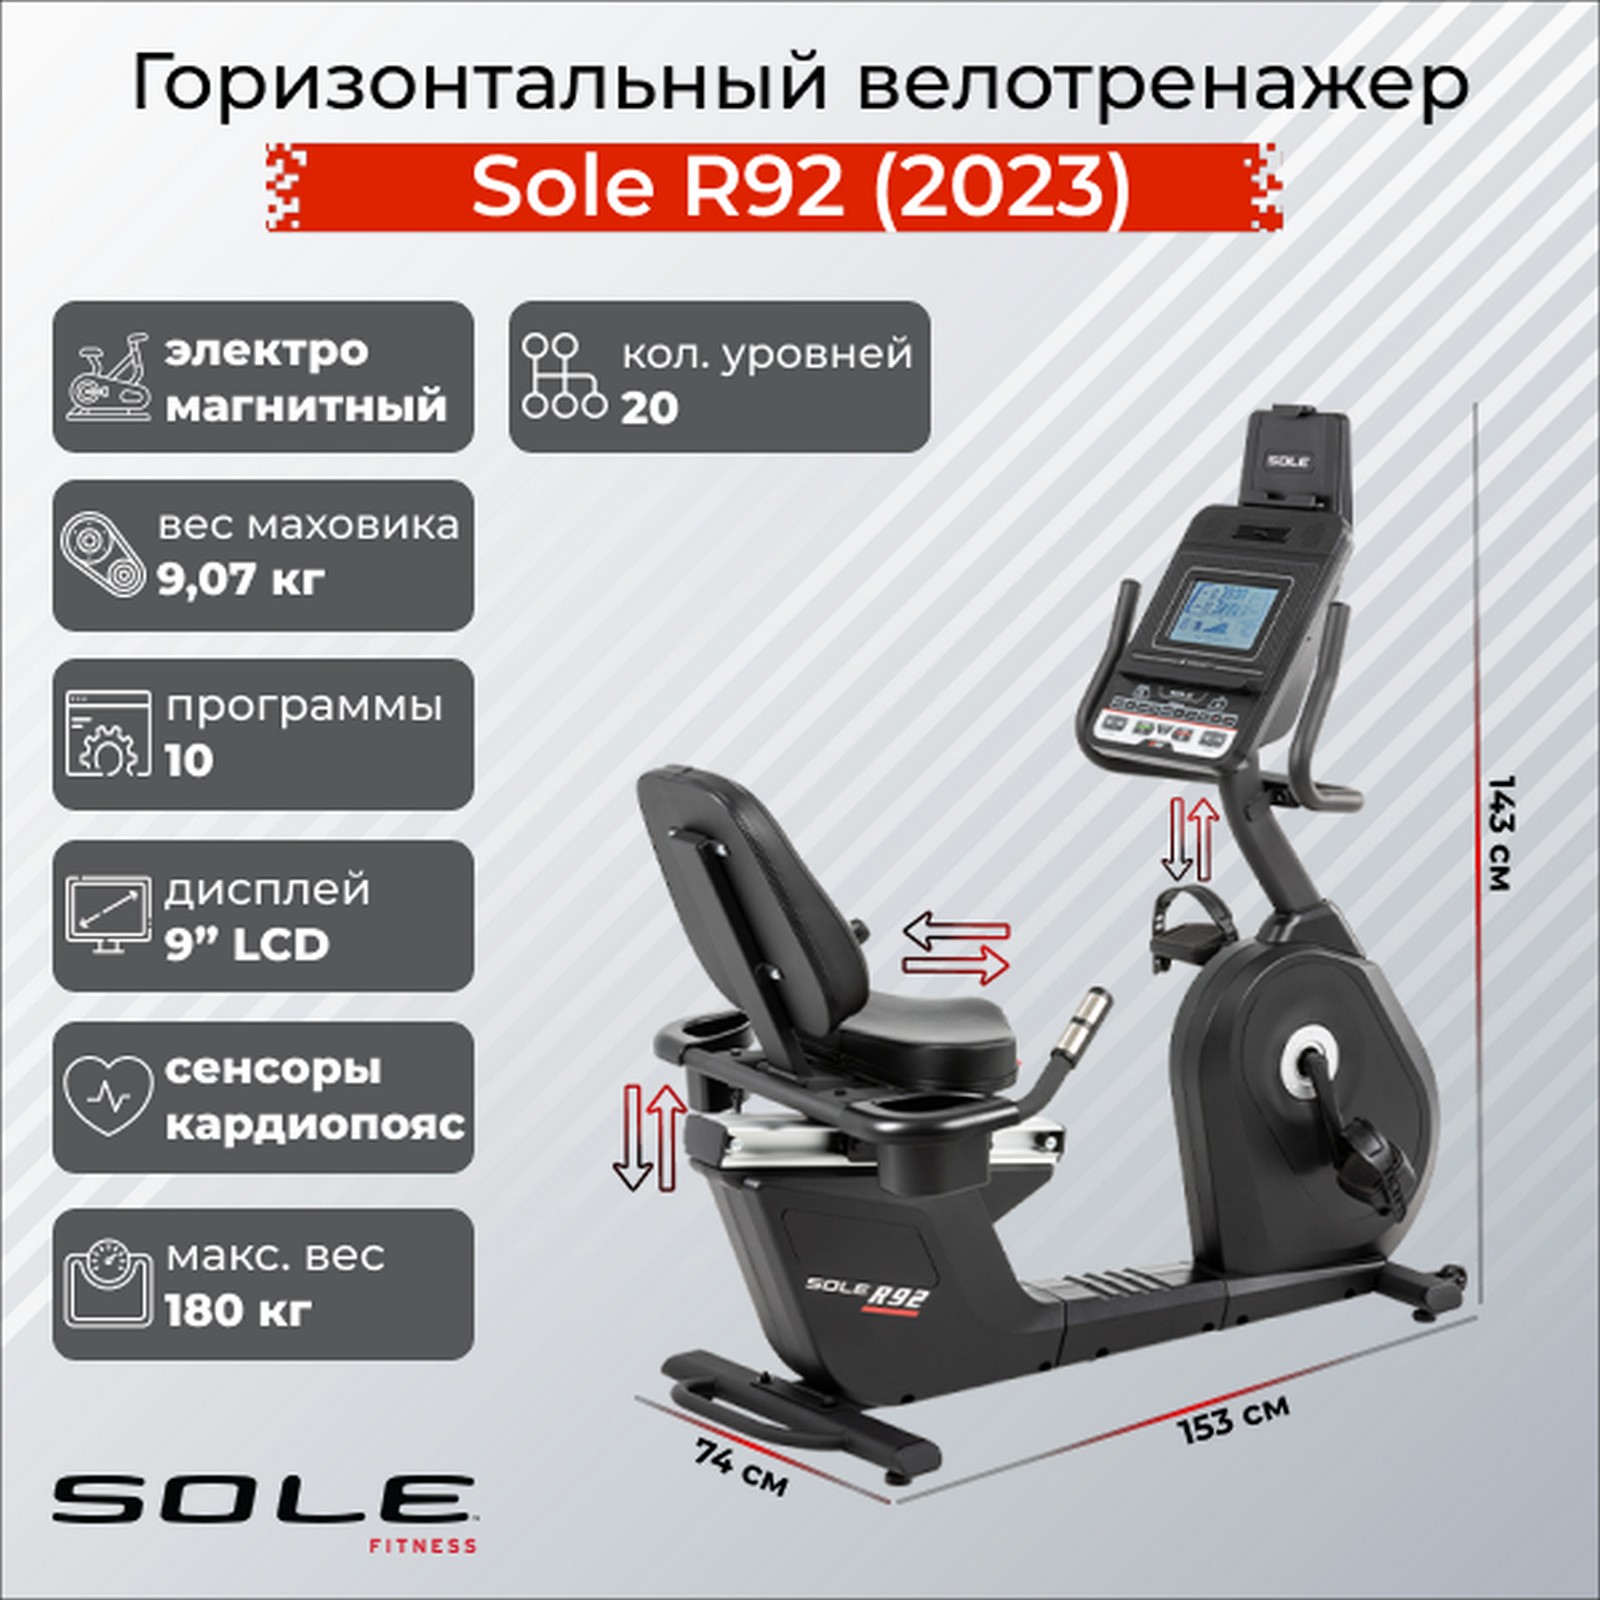 Горизонтальный велотренажер Sole Fitness R92 2023 1600_1600